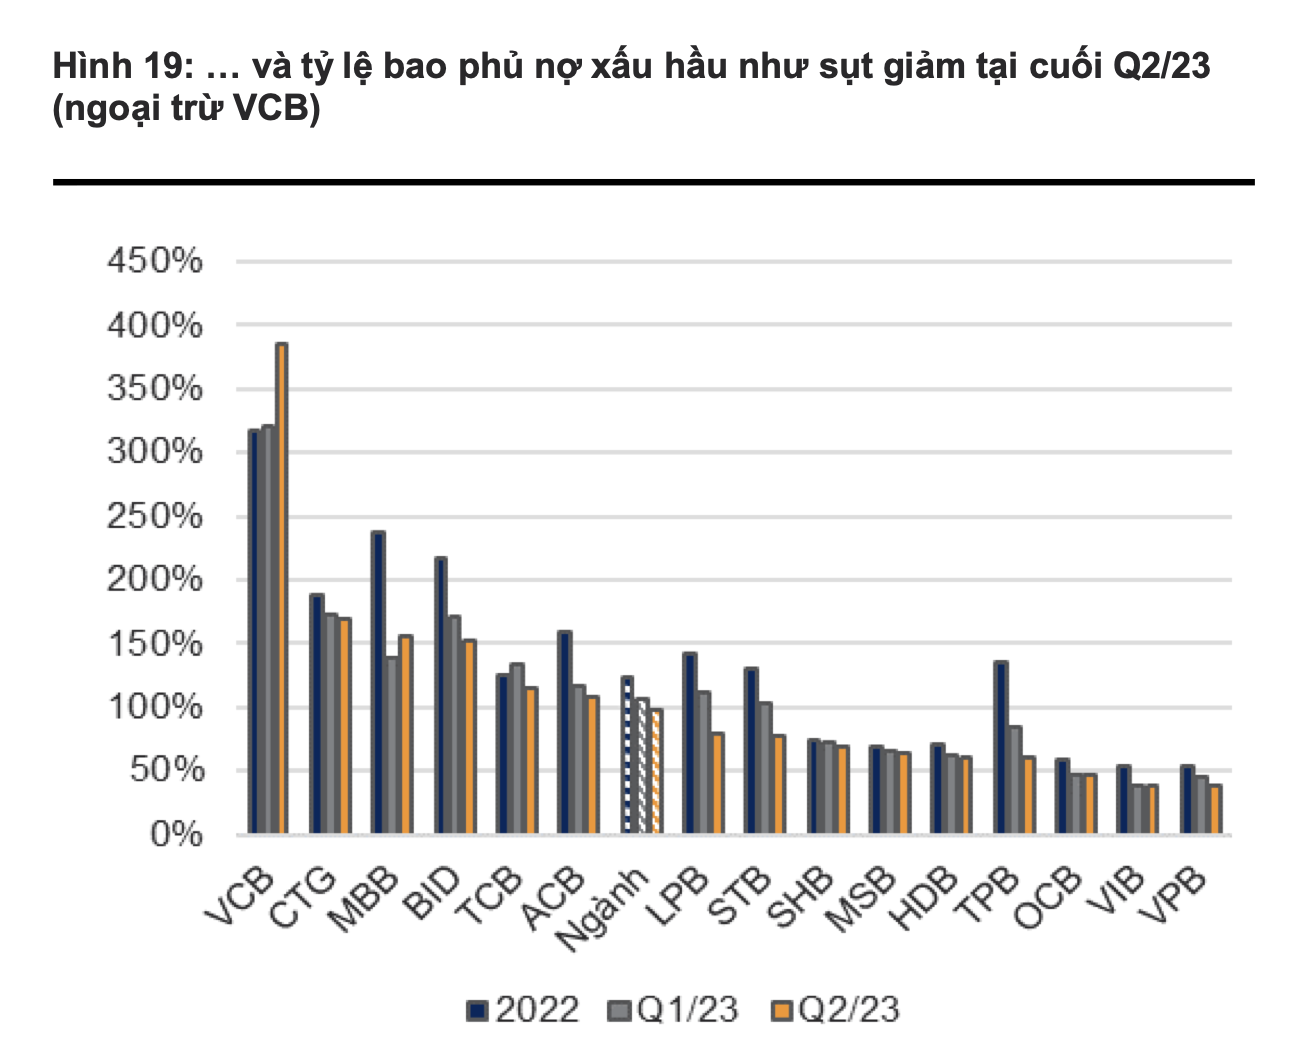 Tỉ lệ bao phủ nợ xấu hầu như sụt giảm tại cuối quý II/2023 (ngoại trừ VCB). Ảnh: VNDIRECT 